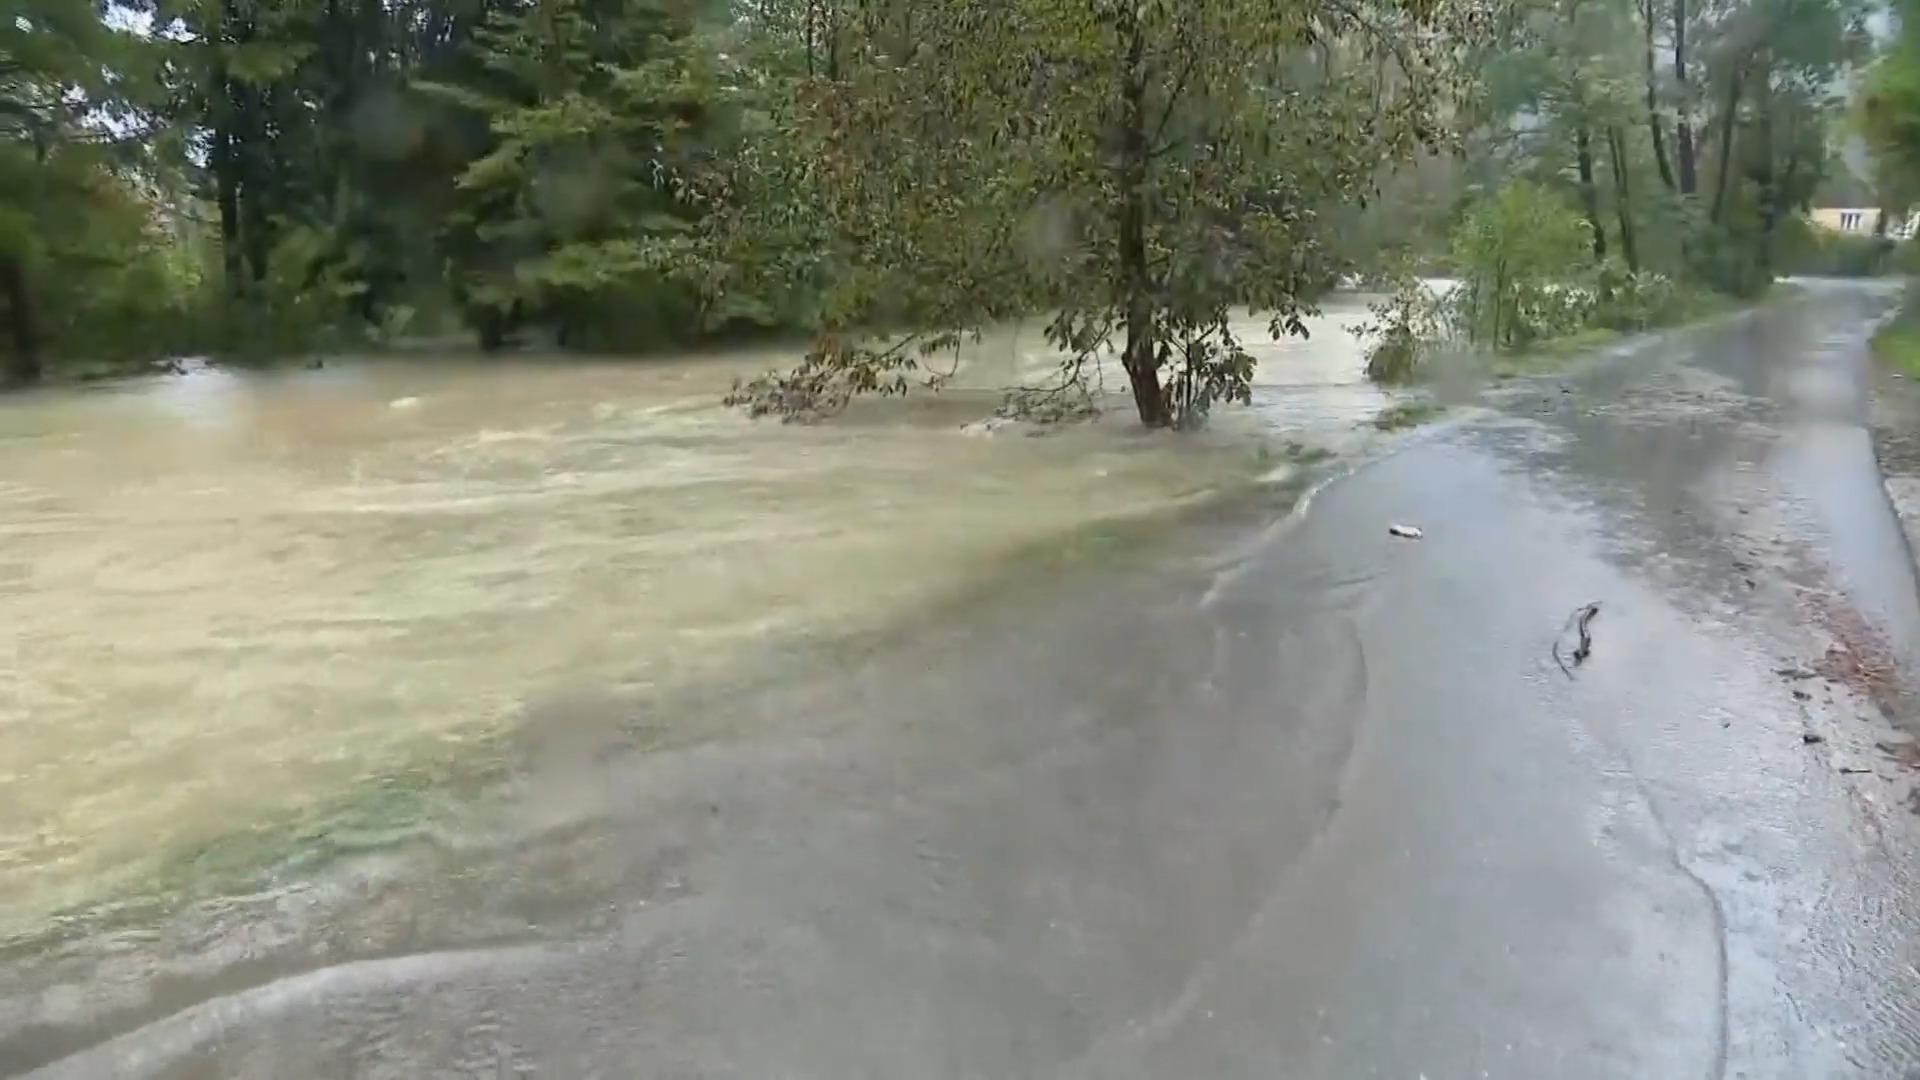 Nach Italien treffen die Sturzfluten Kroatien Unwetter an der Adria gehen weiter